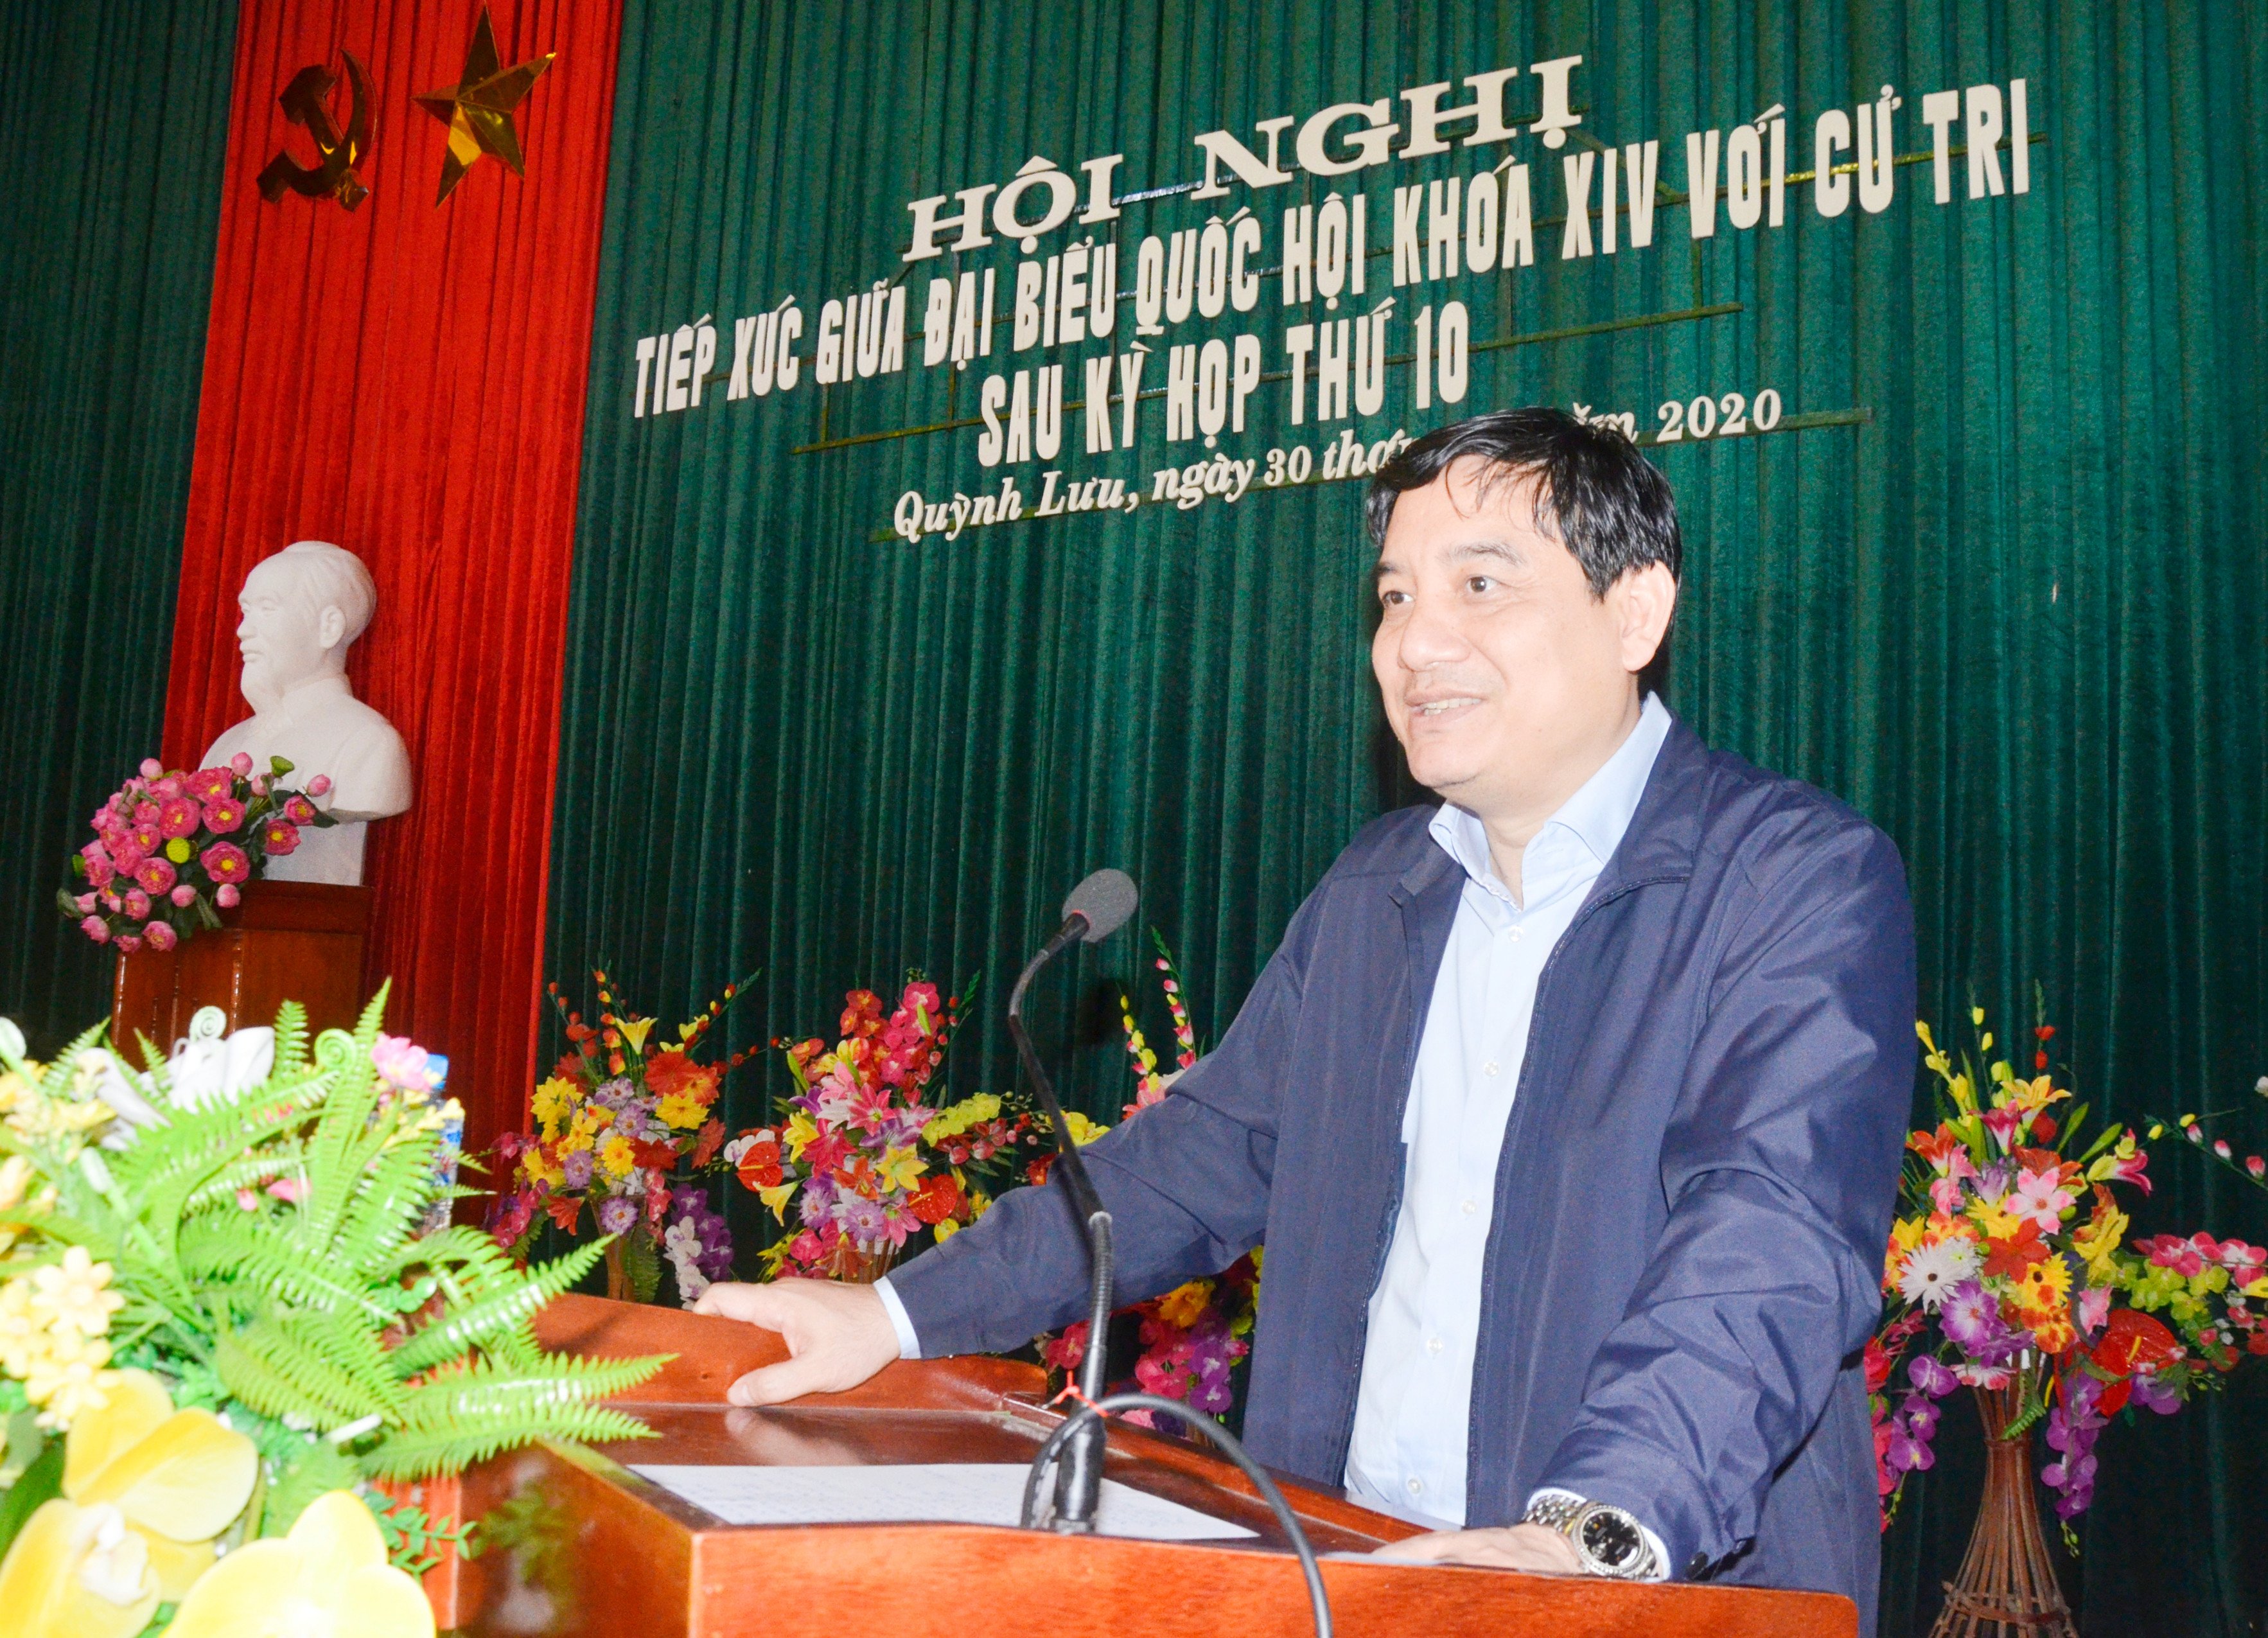 Đồng chí Nguyễn Đắc Vinh tiếp thu, giải trình kiến nghị của cử tri huyện Quỳnh Lưu. Ảnh: Thanh Lê